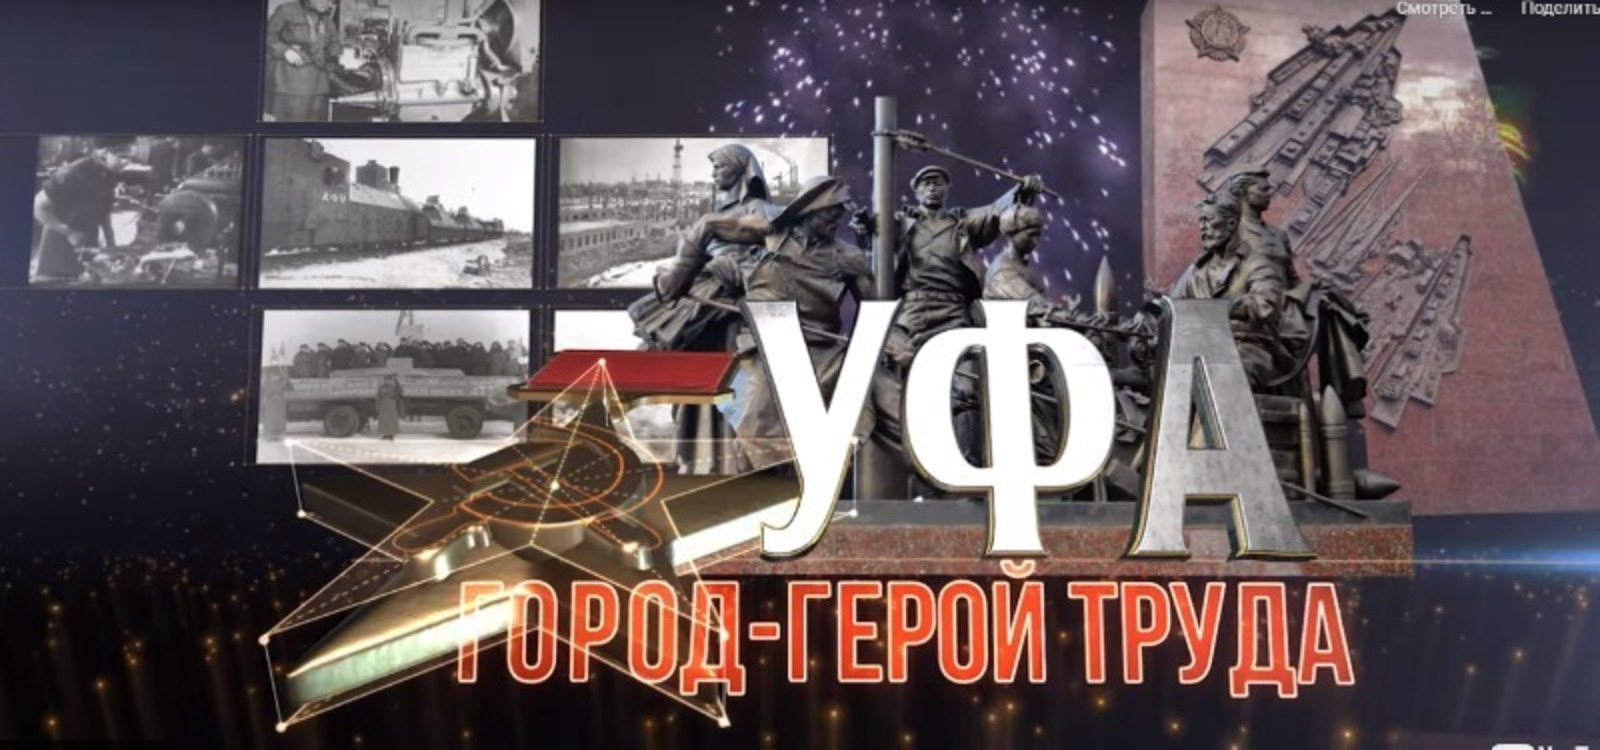 На БСТ покажут фильм «Уфа – город-герой труда» о подвигах наших земляков